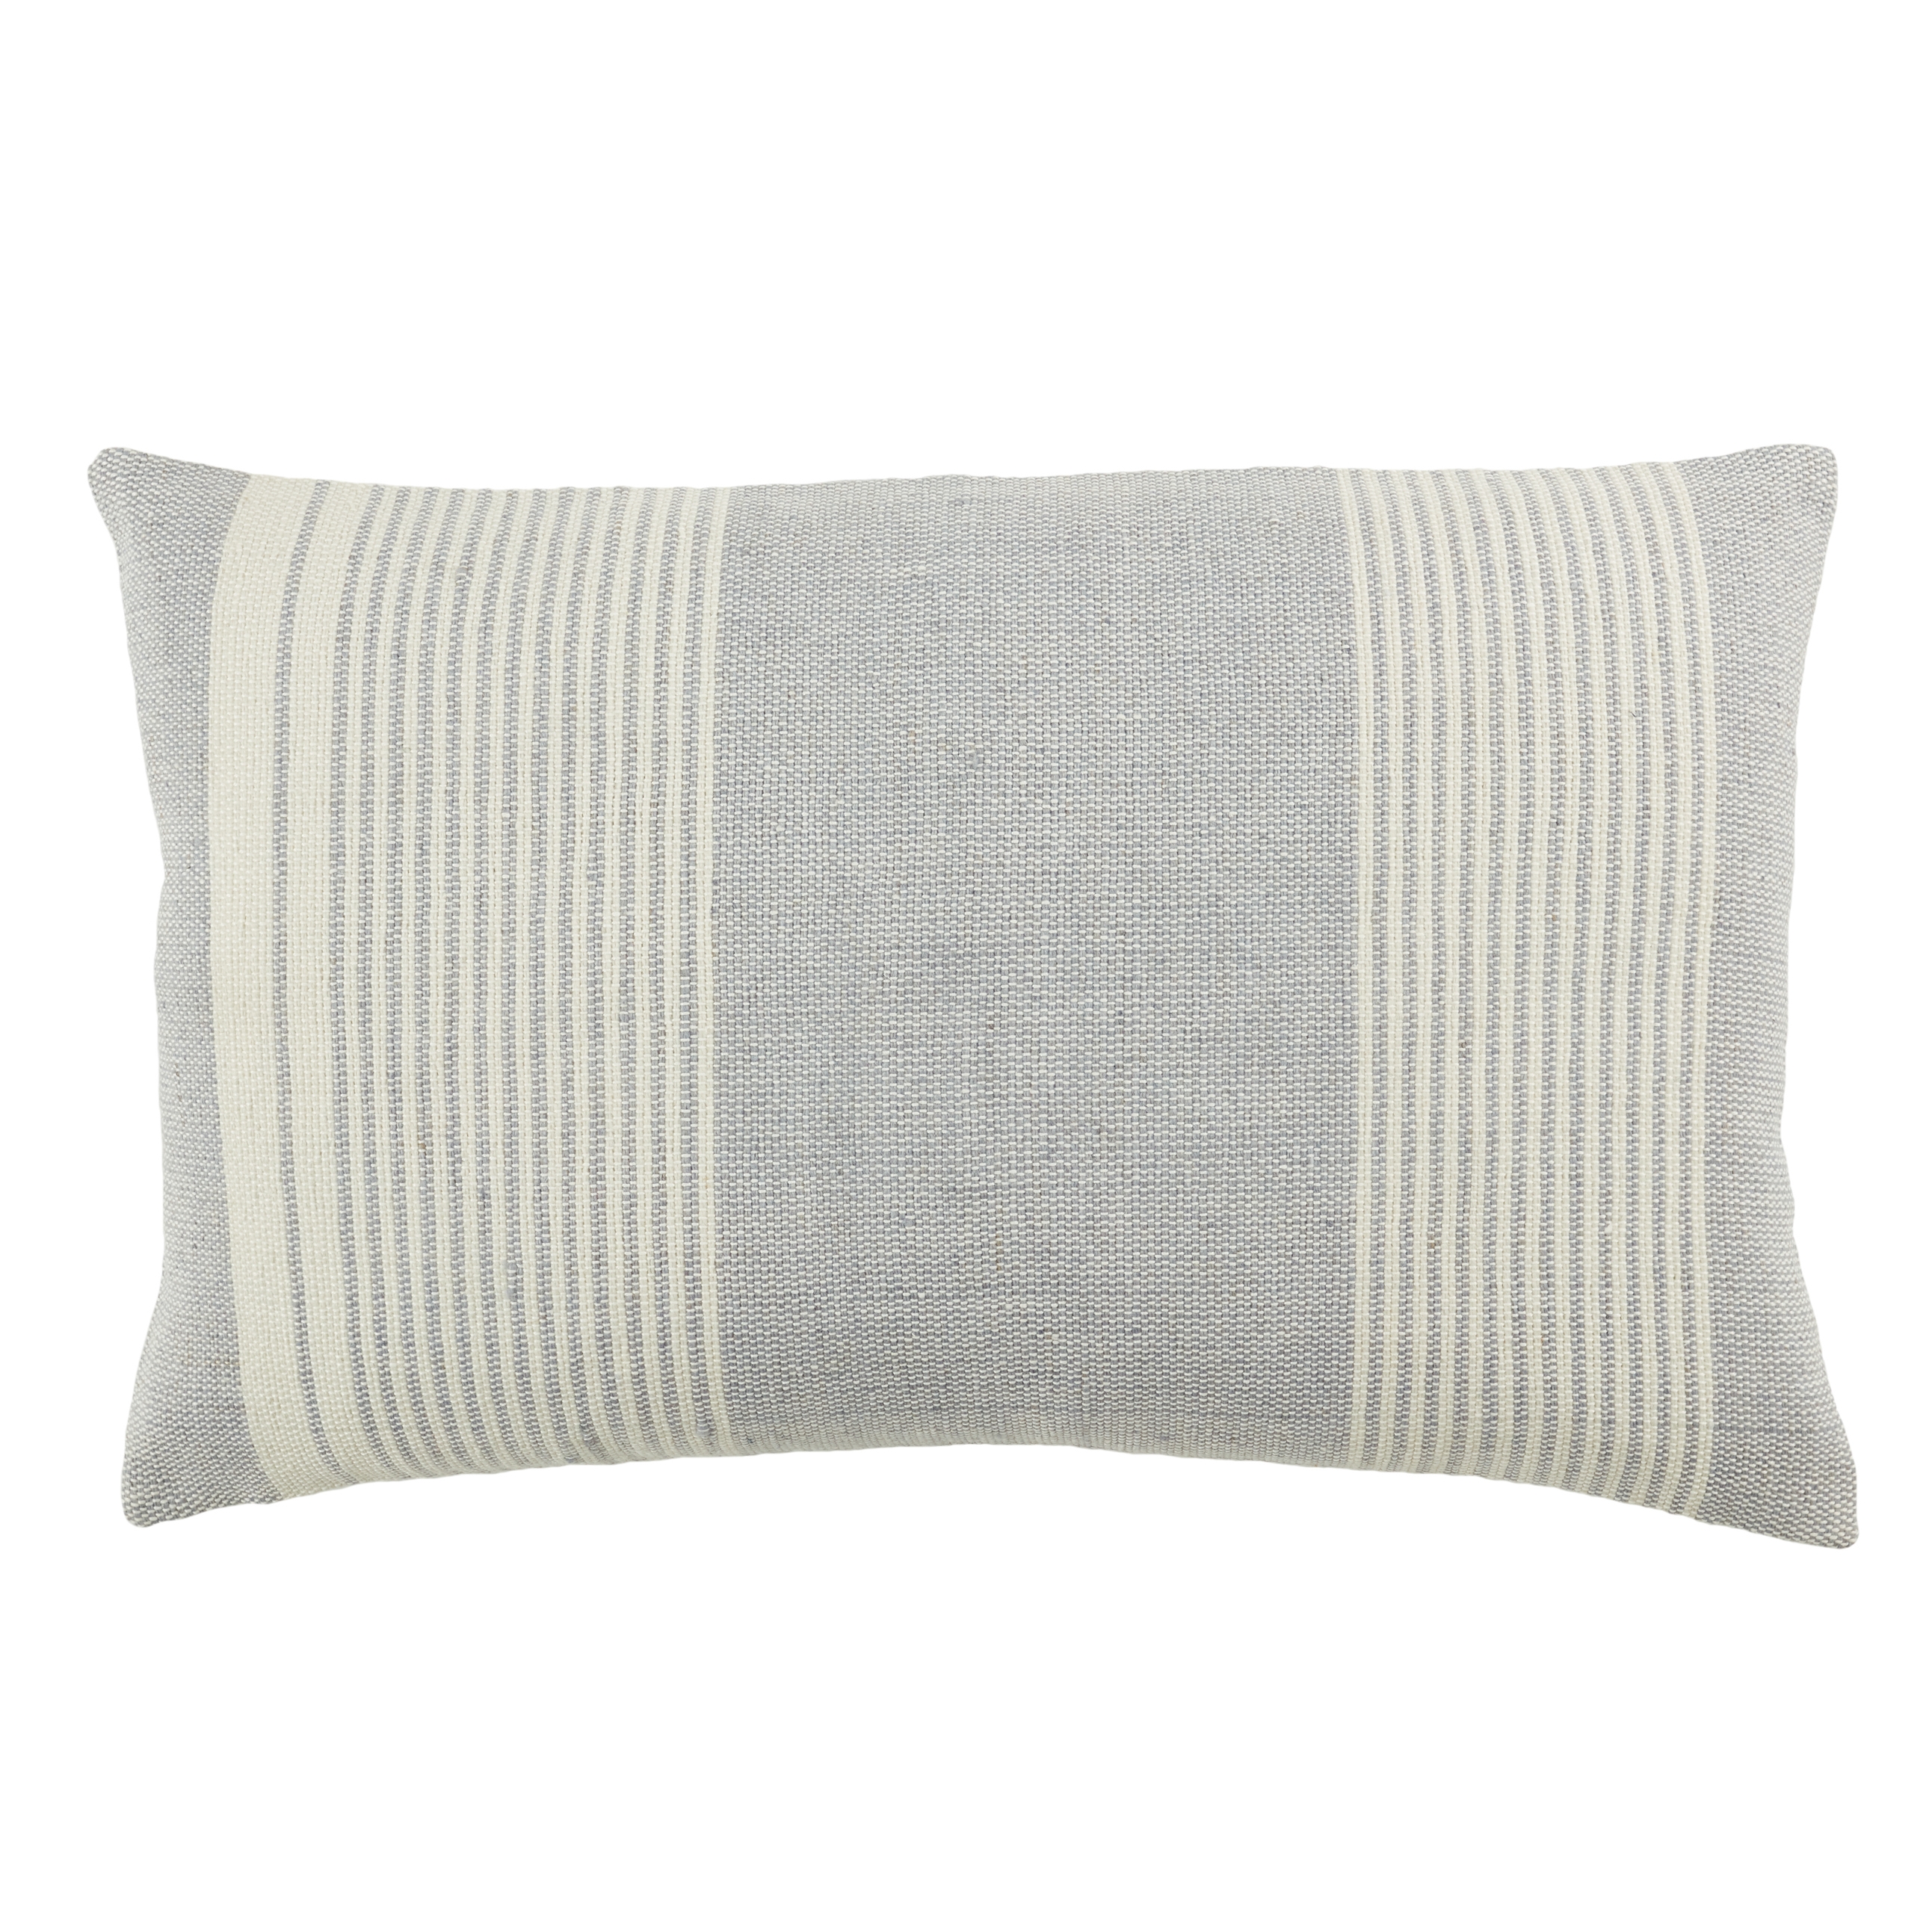 Carinda Lumbar Pillow, Gray, 21" x 13" - Image 0